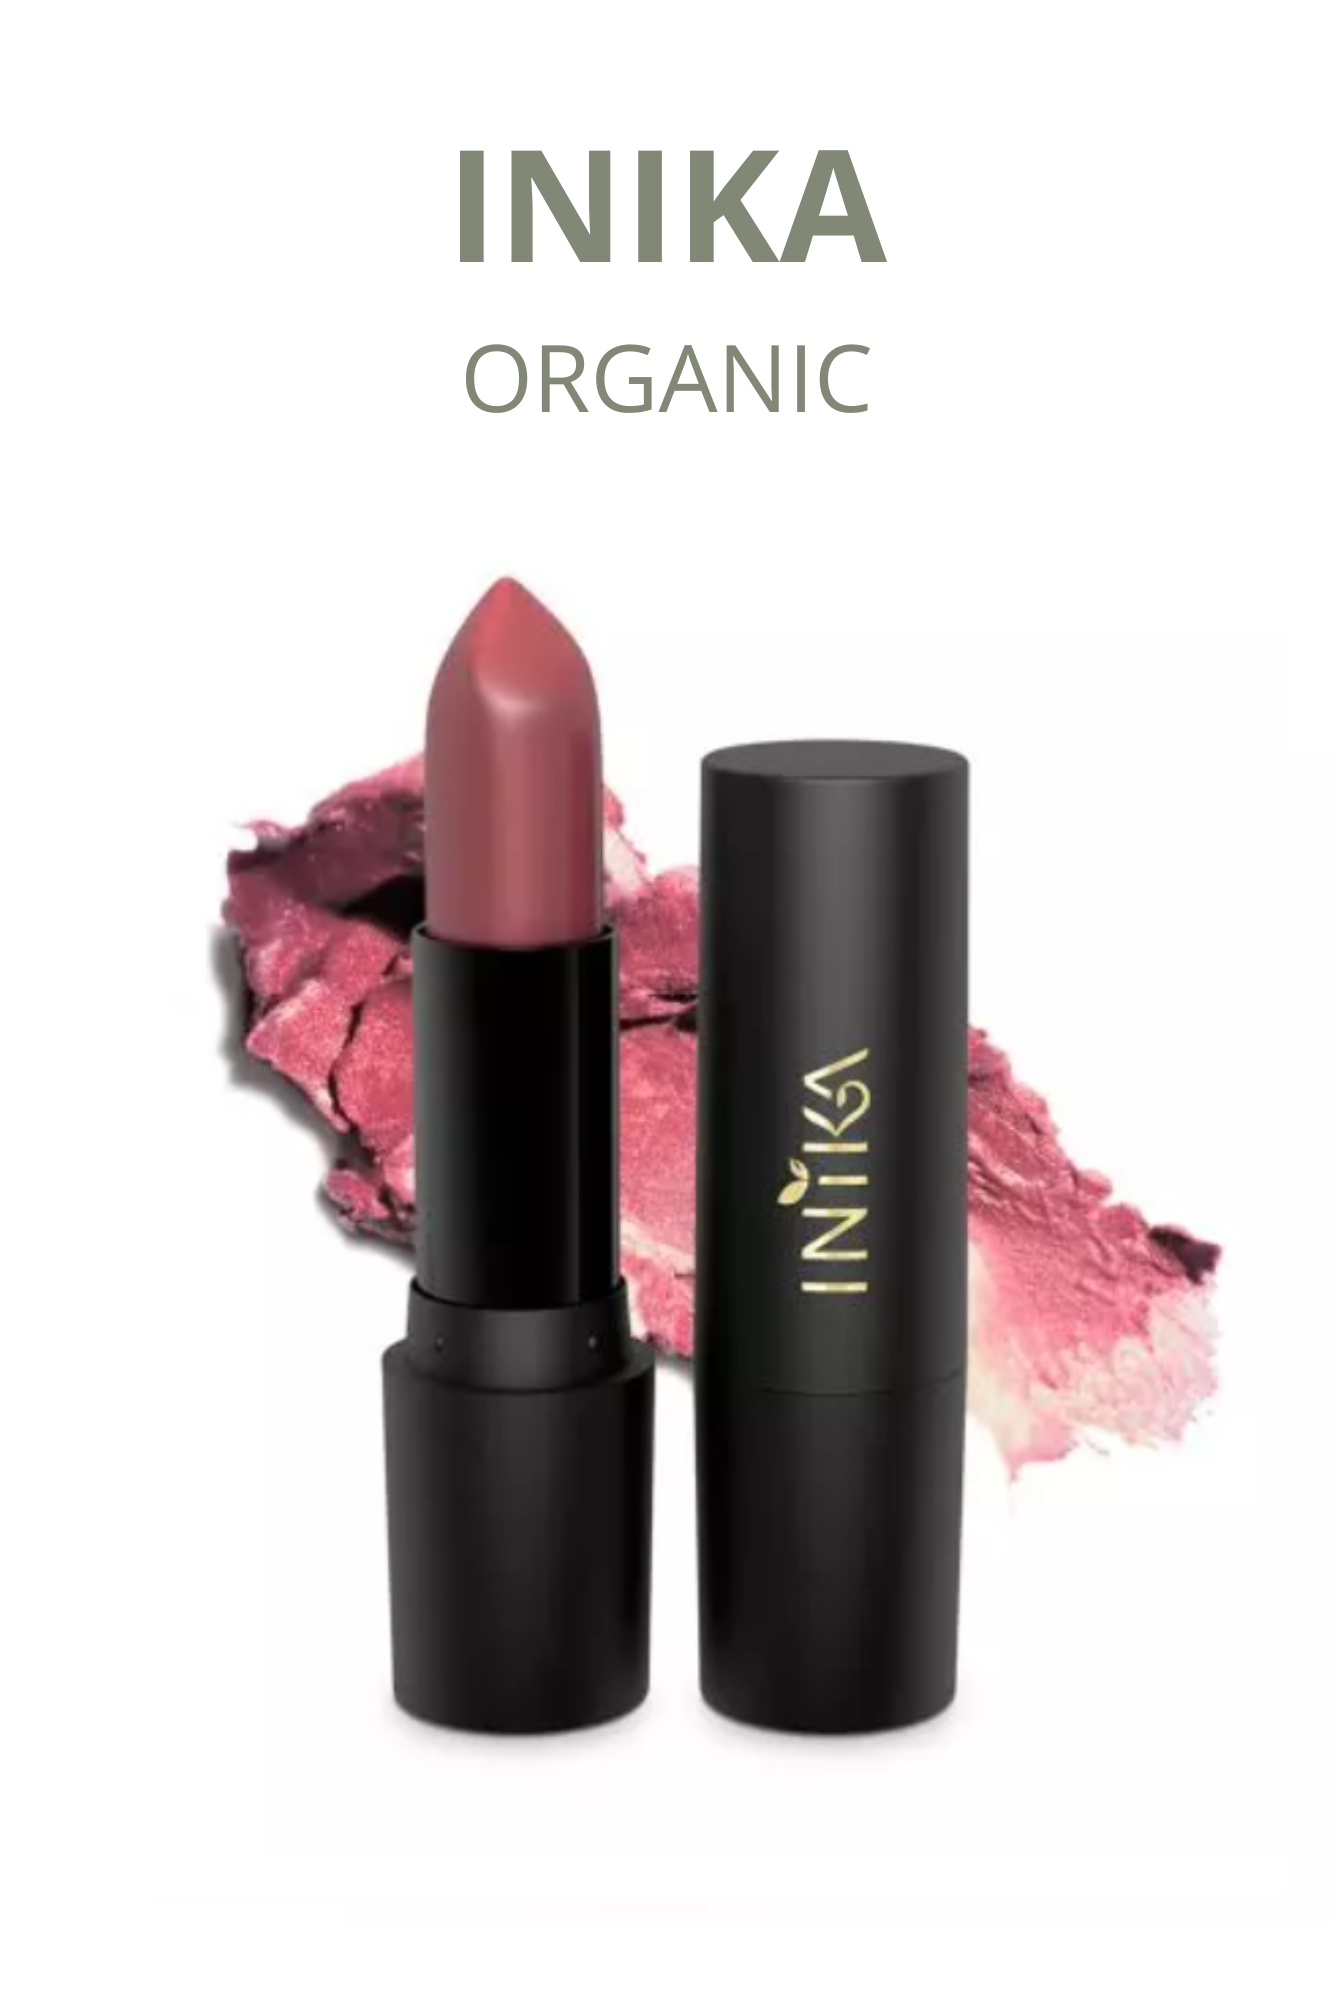 Inika Organic Vegan Lipstick - Honeysuckle